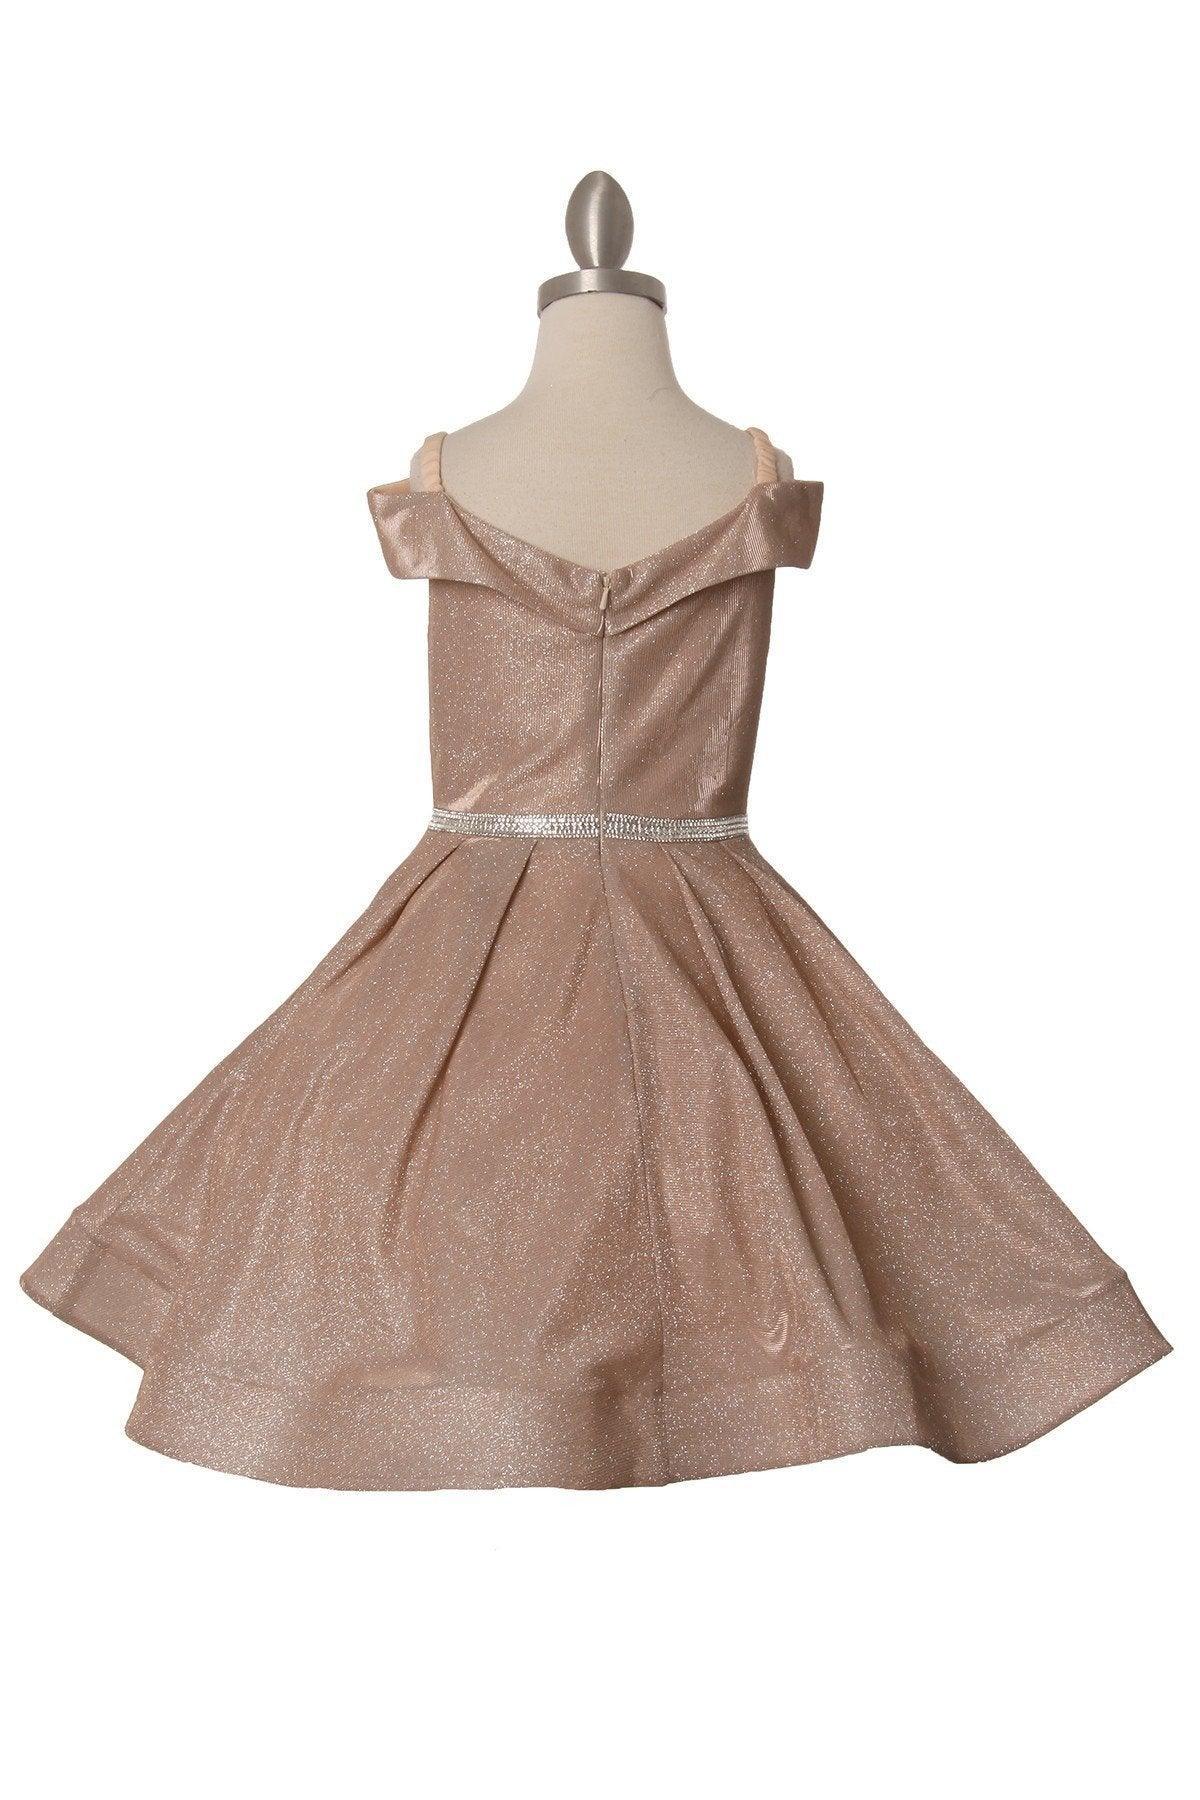 Short Metallic Off Shoulder Flower Girl  Dress - The Dress Outlet